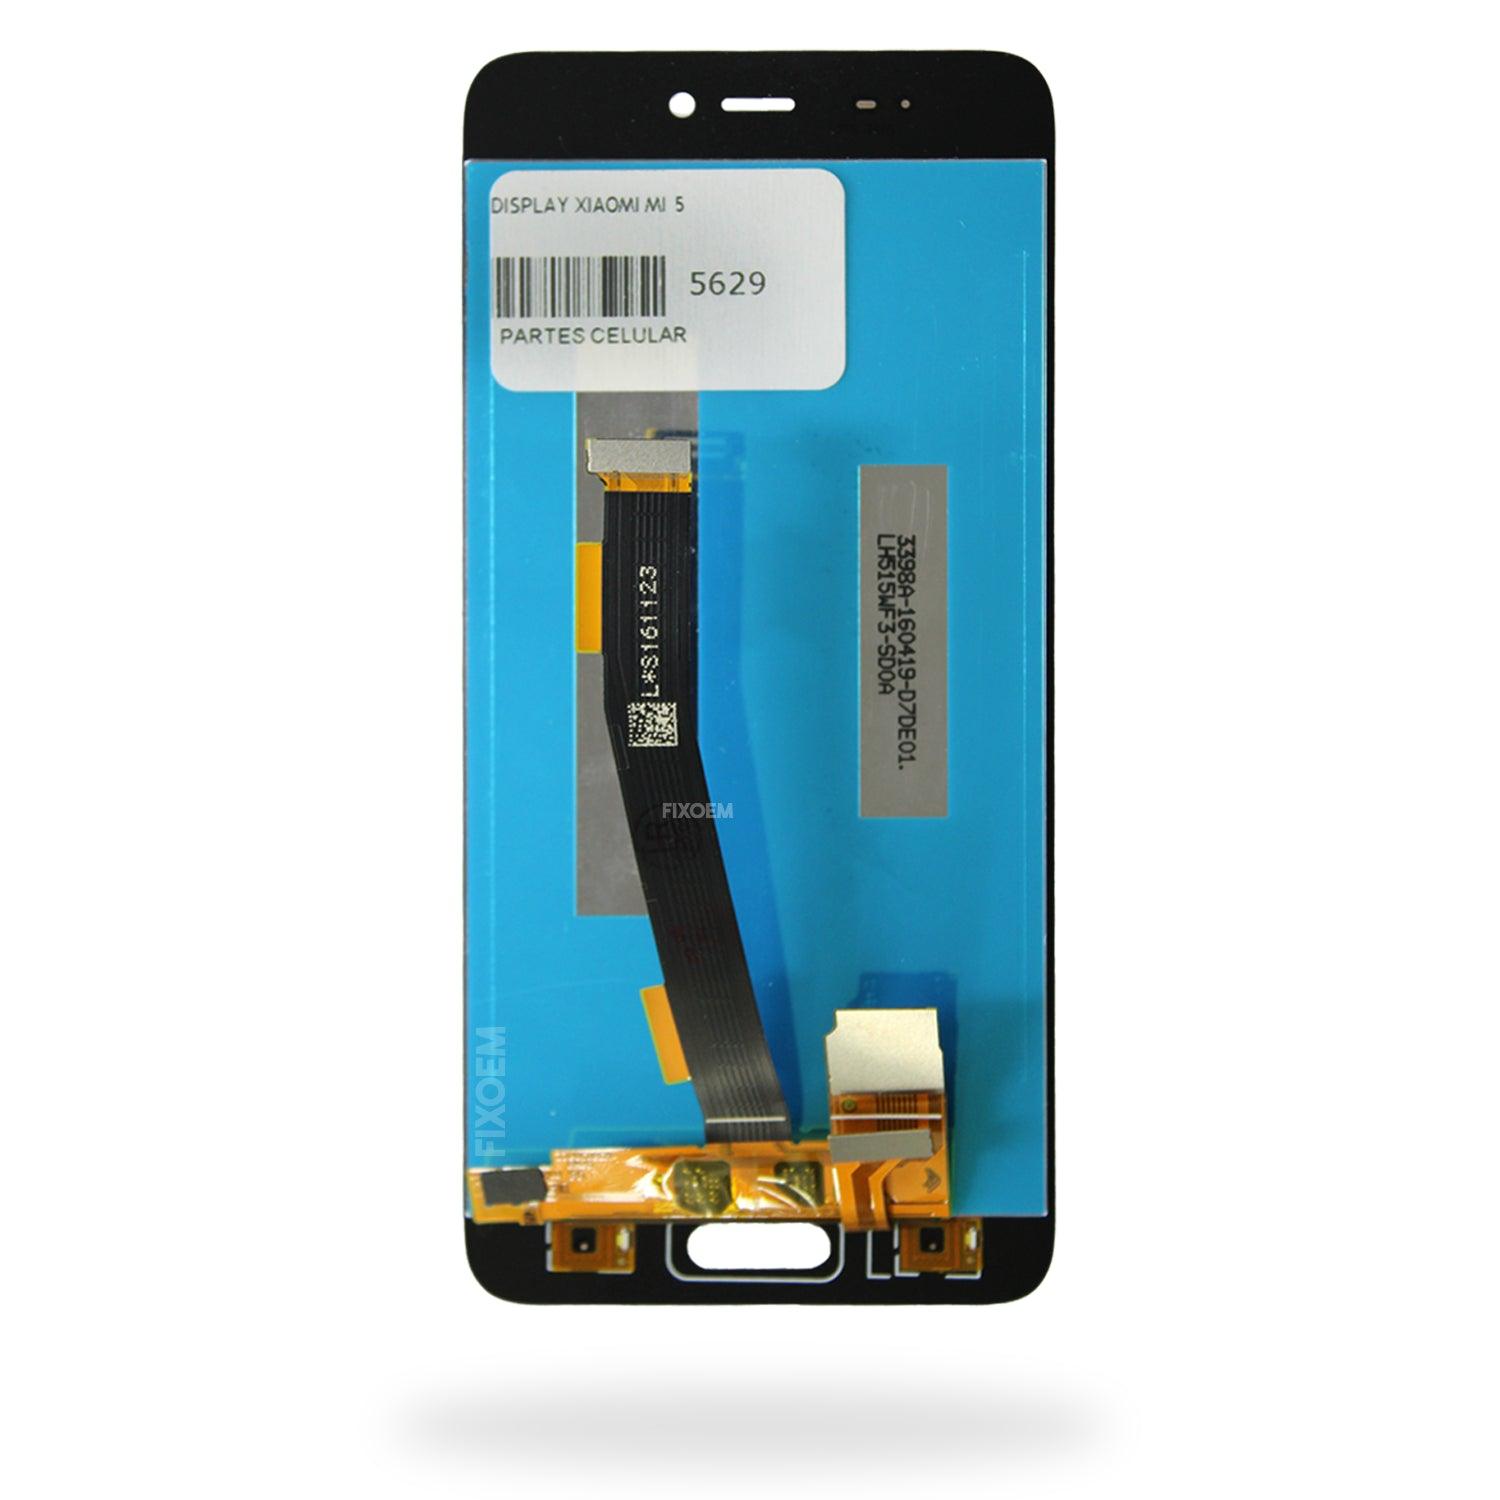 Display Xiaomi Mi 5 IPS a solo $ 290.00 Refaccion y puestos celulares, refurbish y microelectronica.- FixOEM